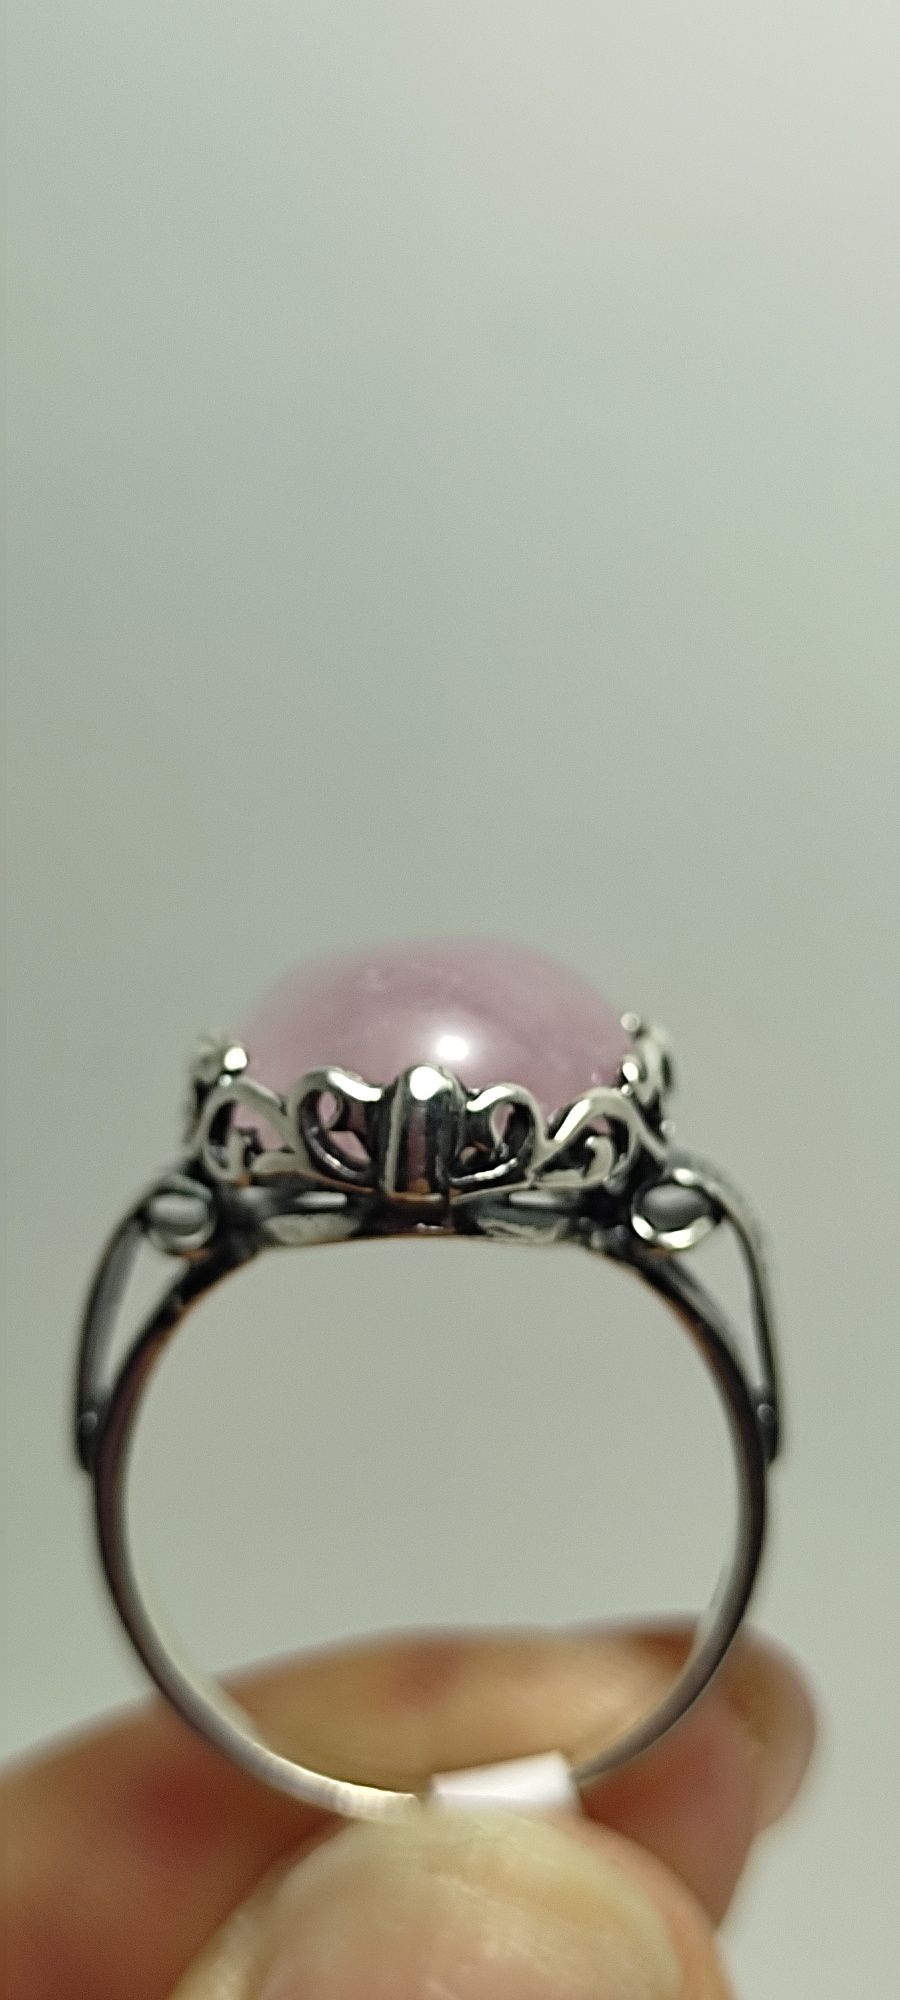 Pierścionek srebrny z kwarcem różowym